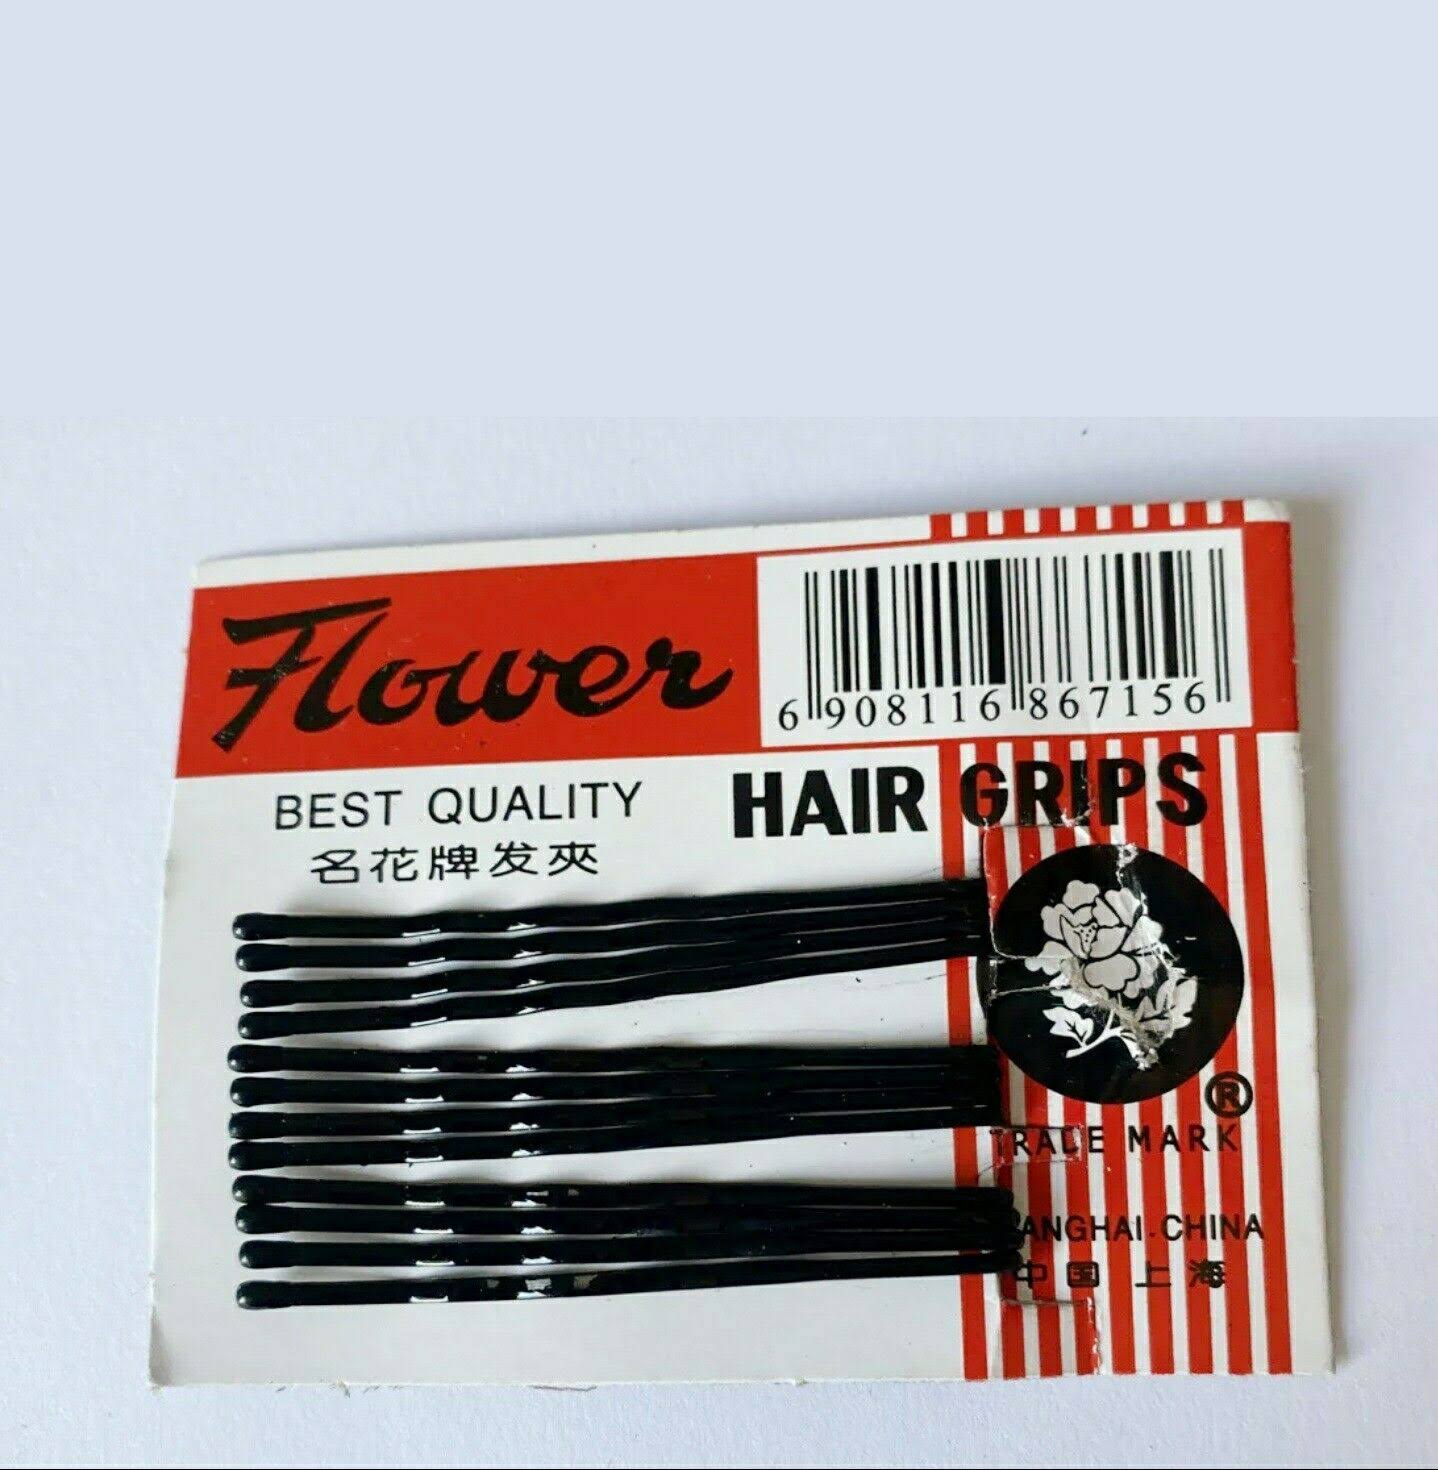 Hair Clips Flower Brand Black Hair Grip Clips x12 Woman Girls